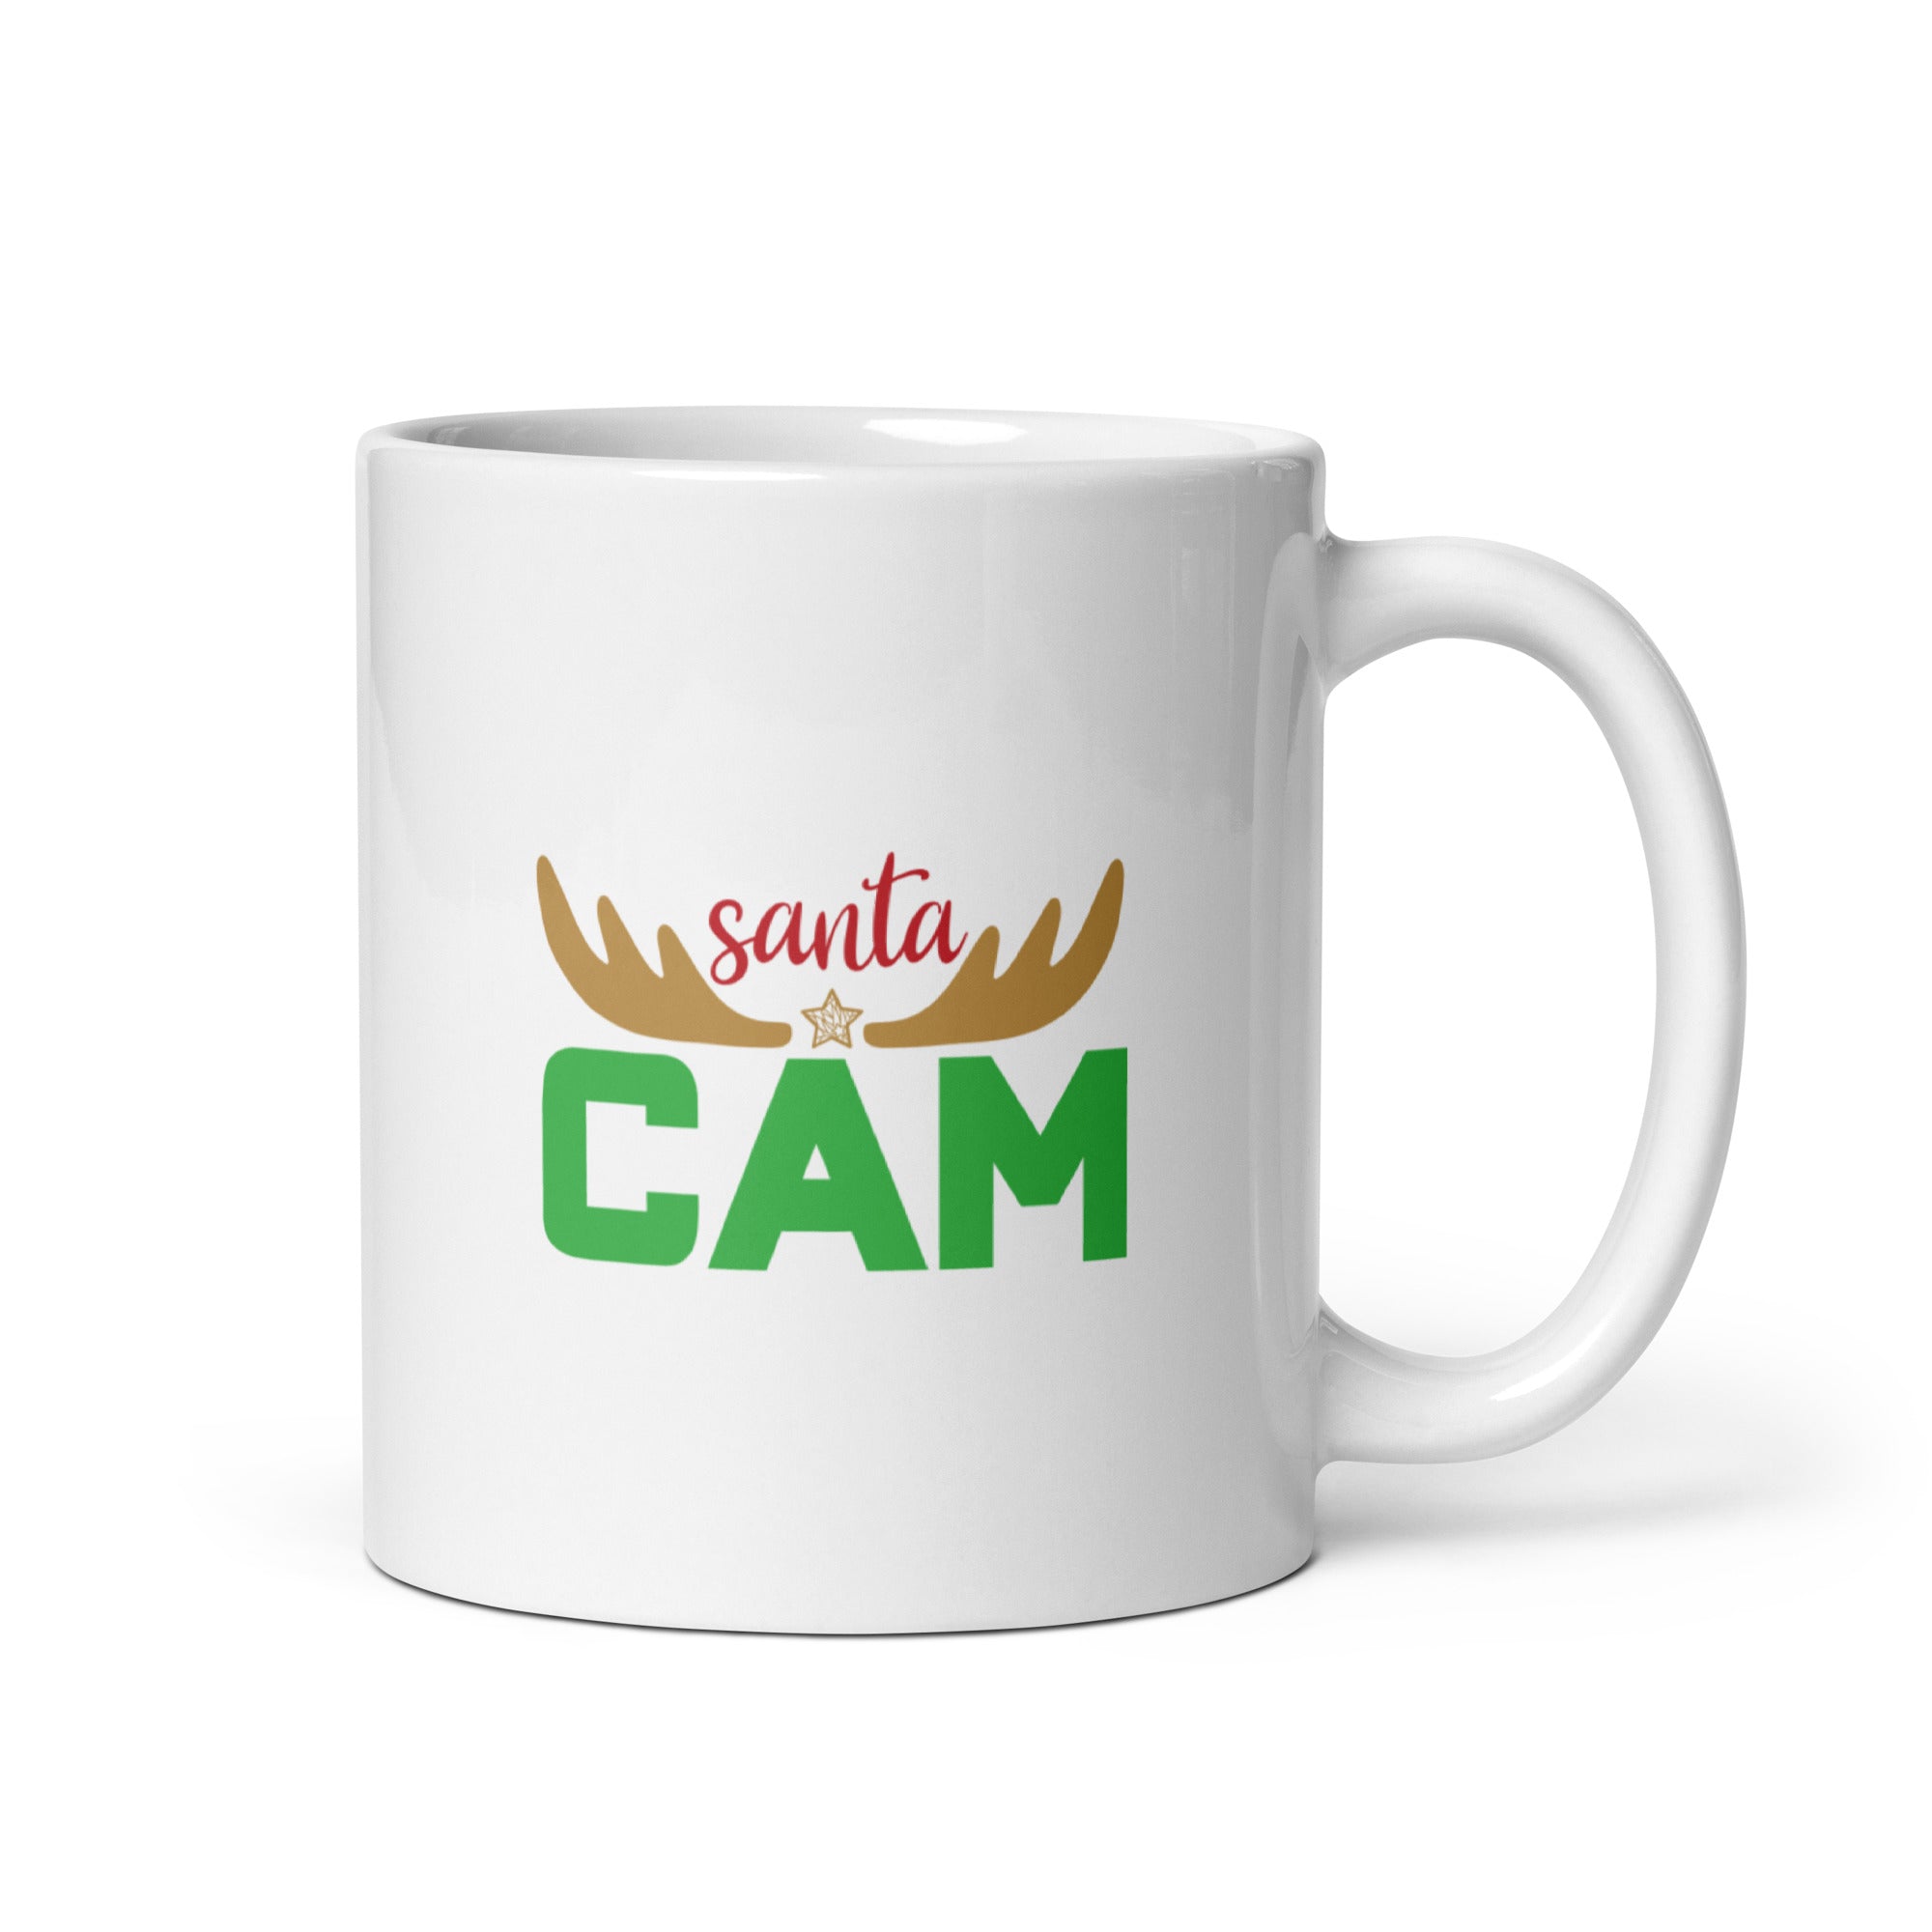 Santa Cam - White glossy mug